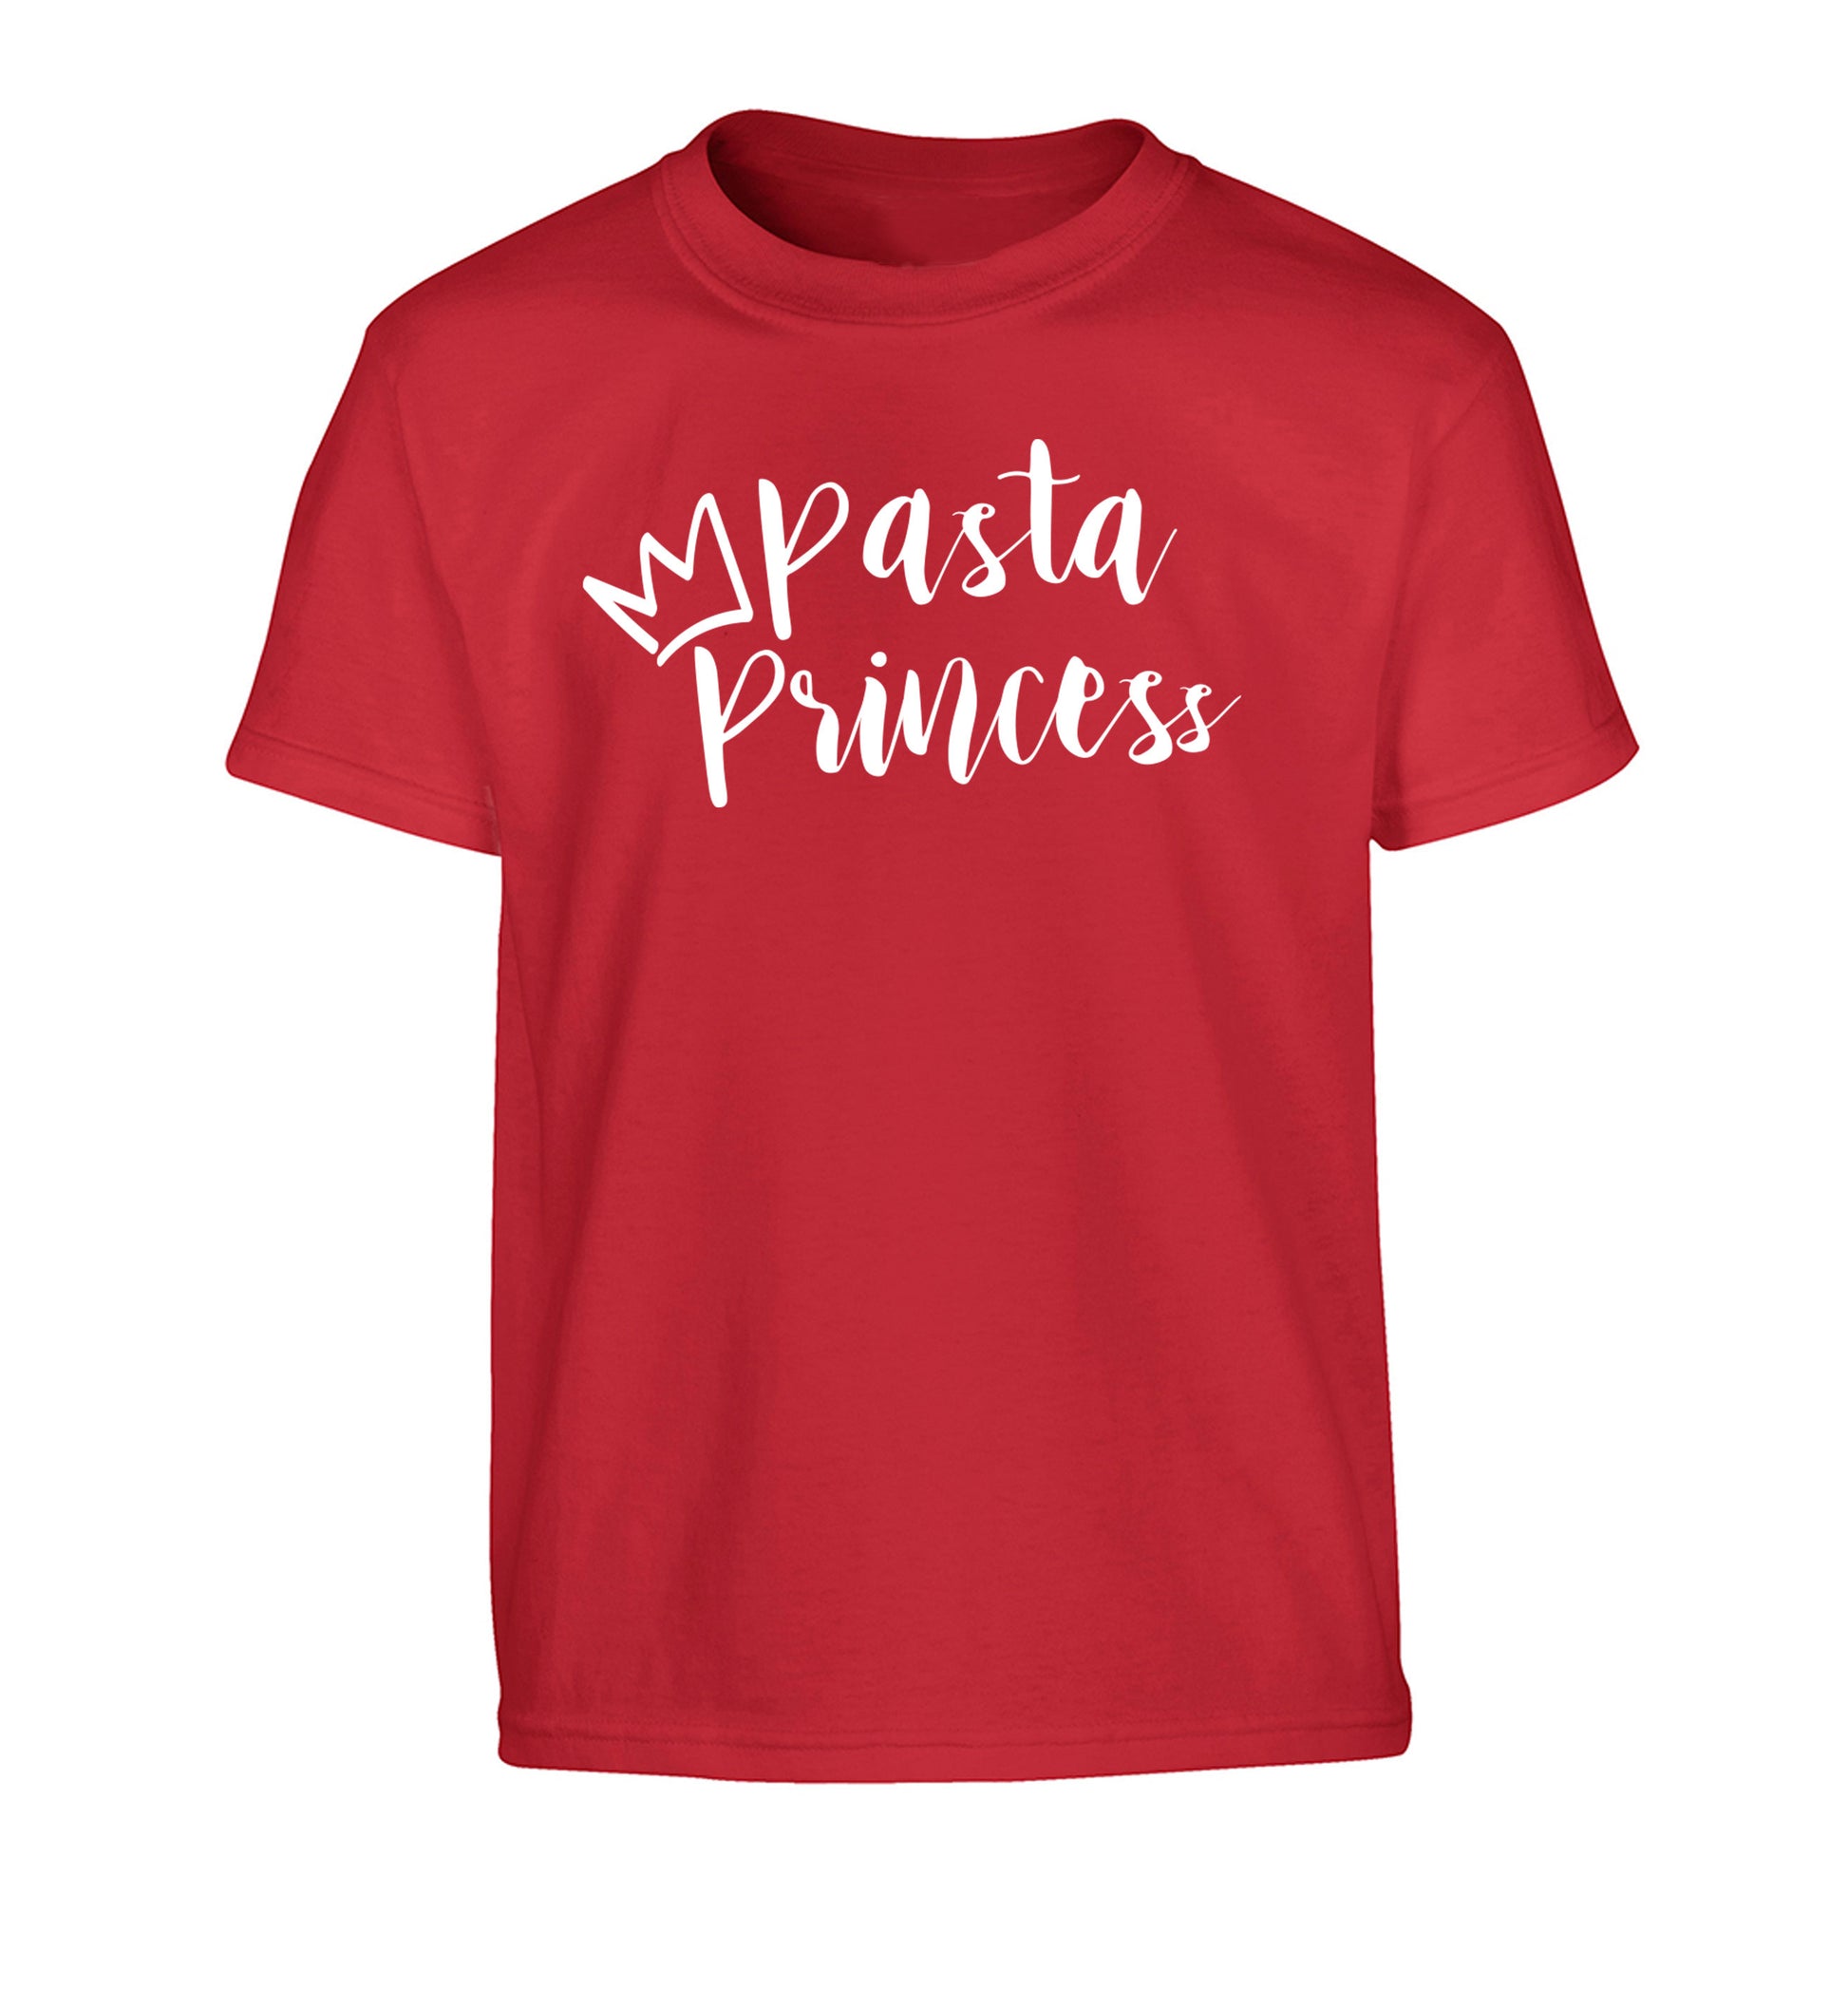 Pasta Princess Children's red Tshirt 12-14 Years